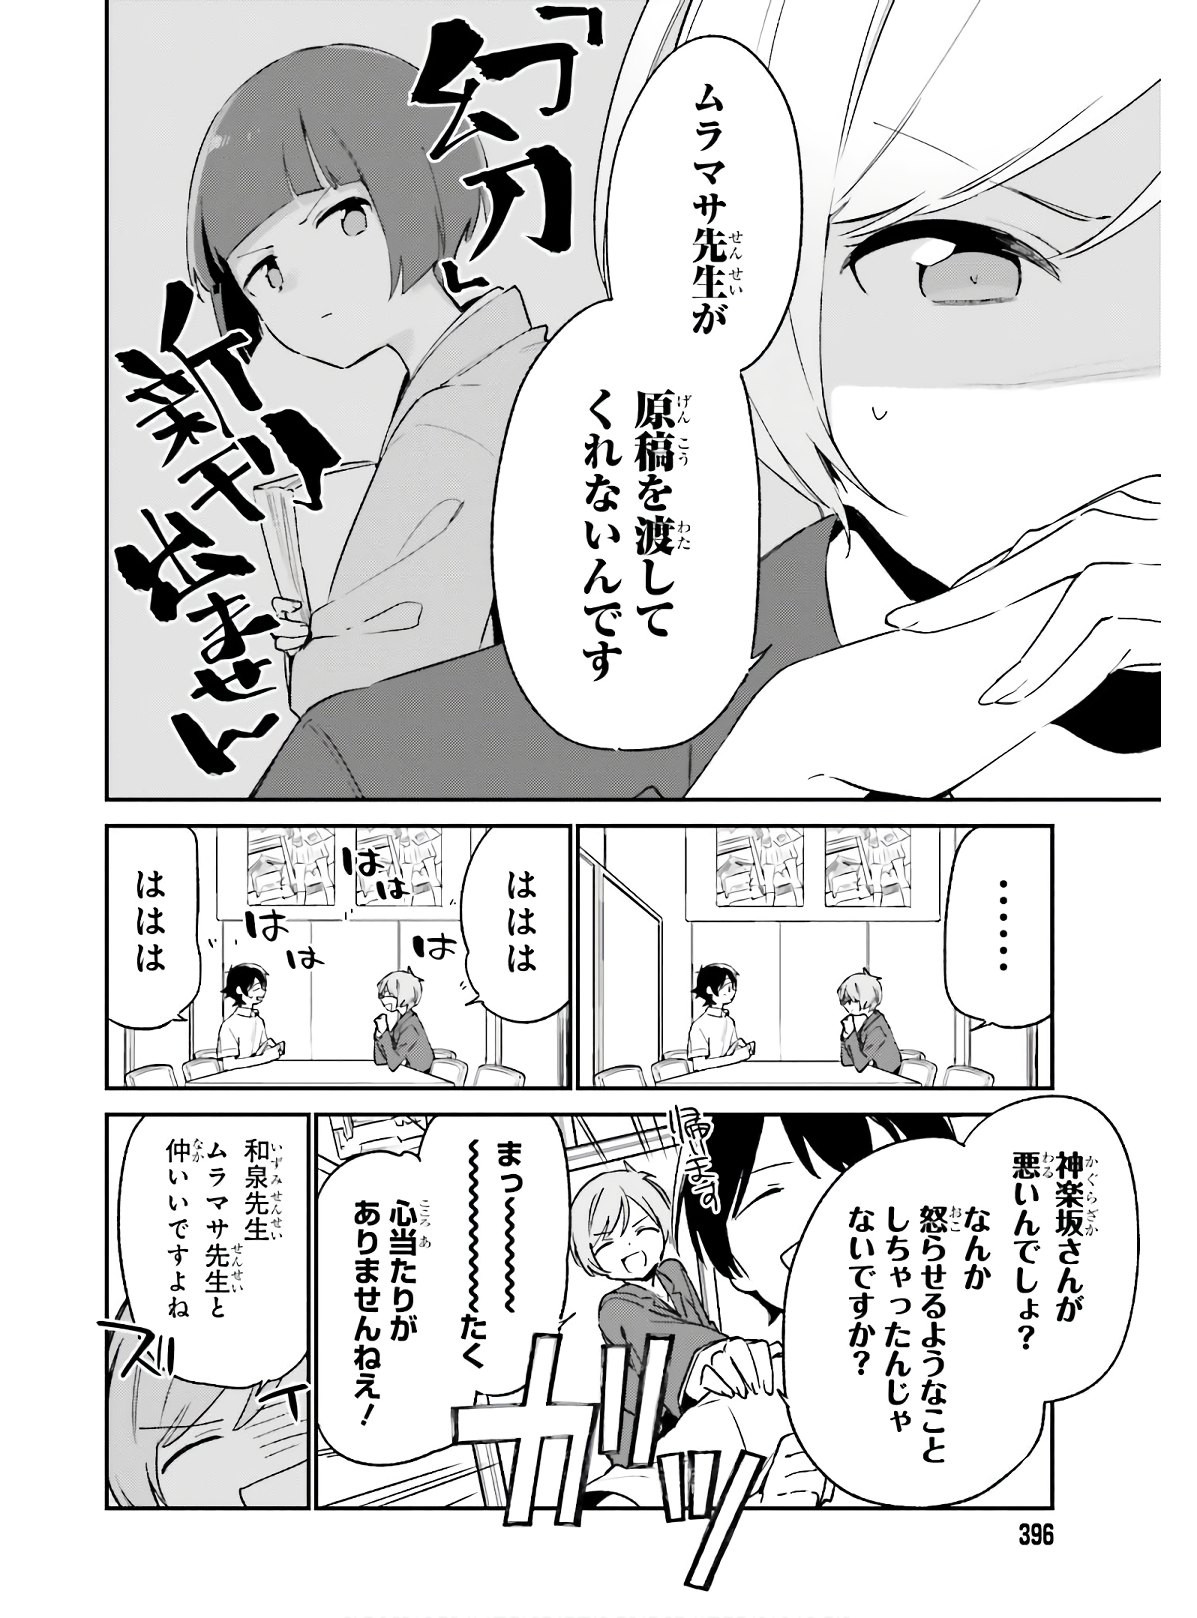 Ero Manga Sensei - Chapter 68 - Page 4